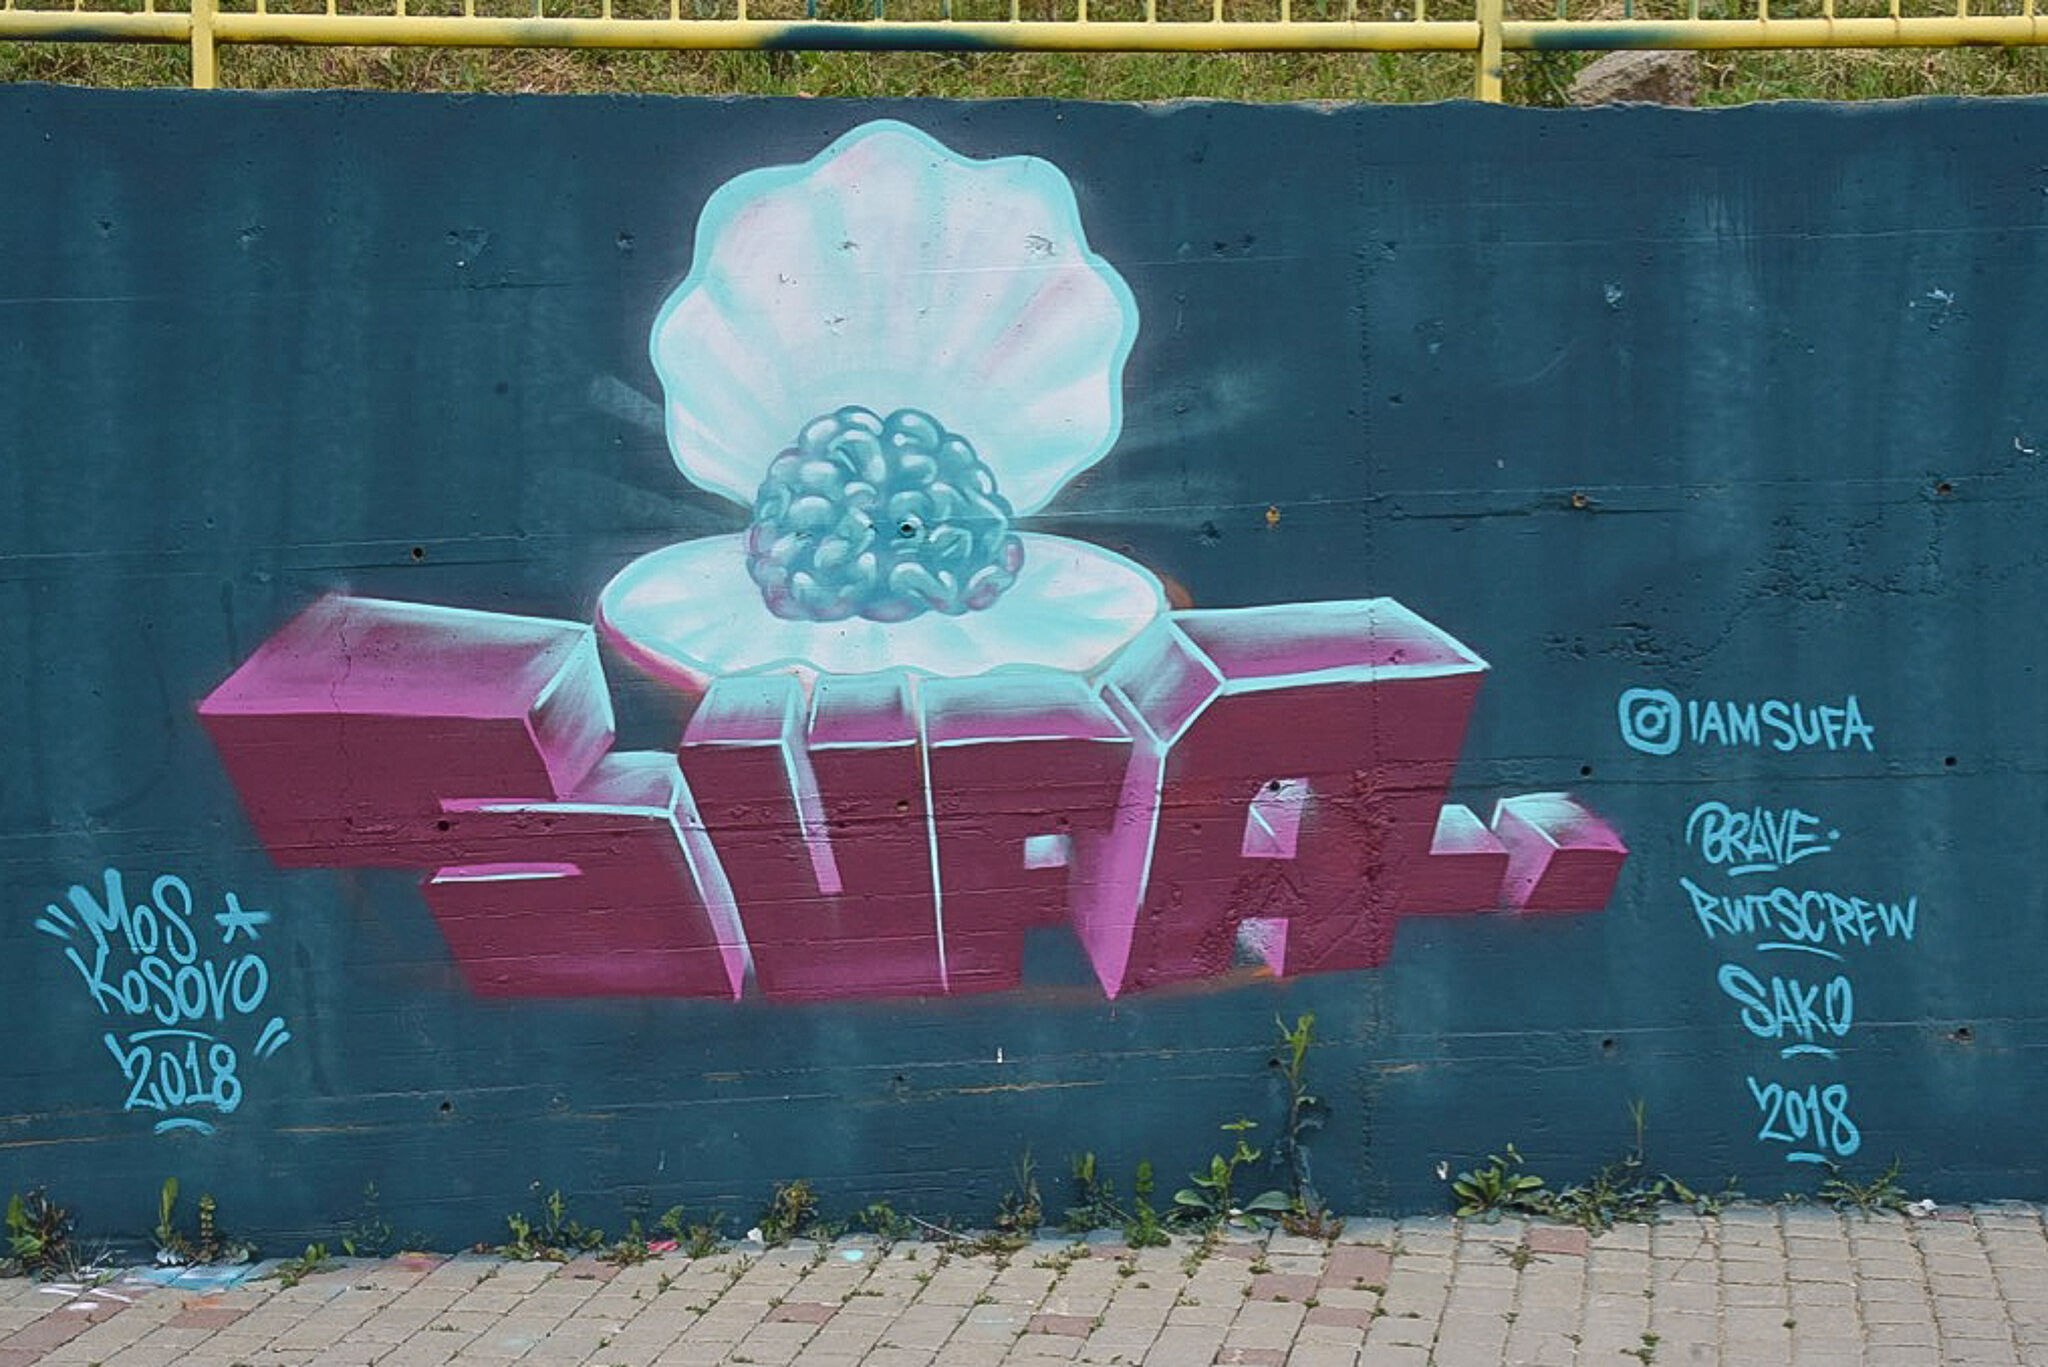 SUFA&mdash;Graffiti_SUFA_FOR_MOS_Kosovo_2018